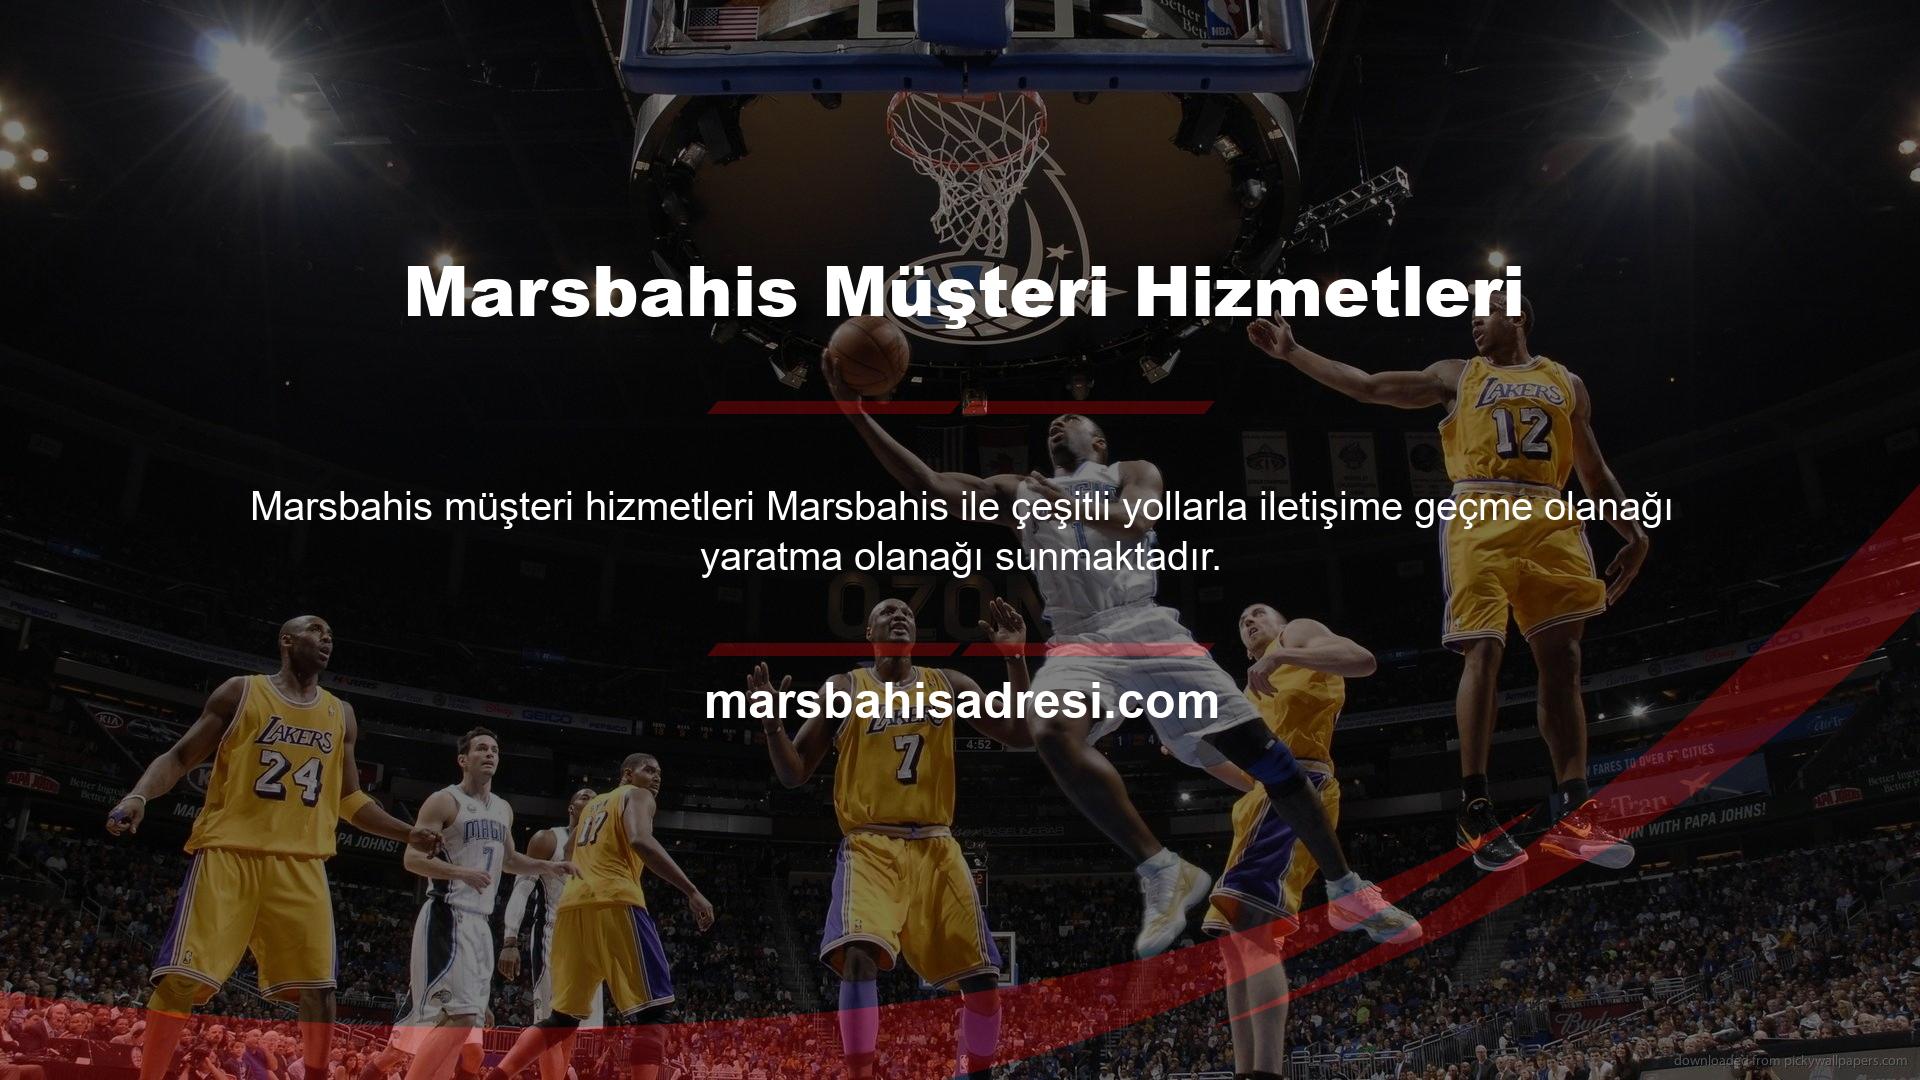 Marsbahis web sitesi oyunculara özel müşteri desteği sağlamaya adanmıştır